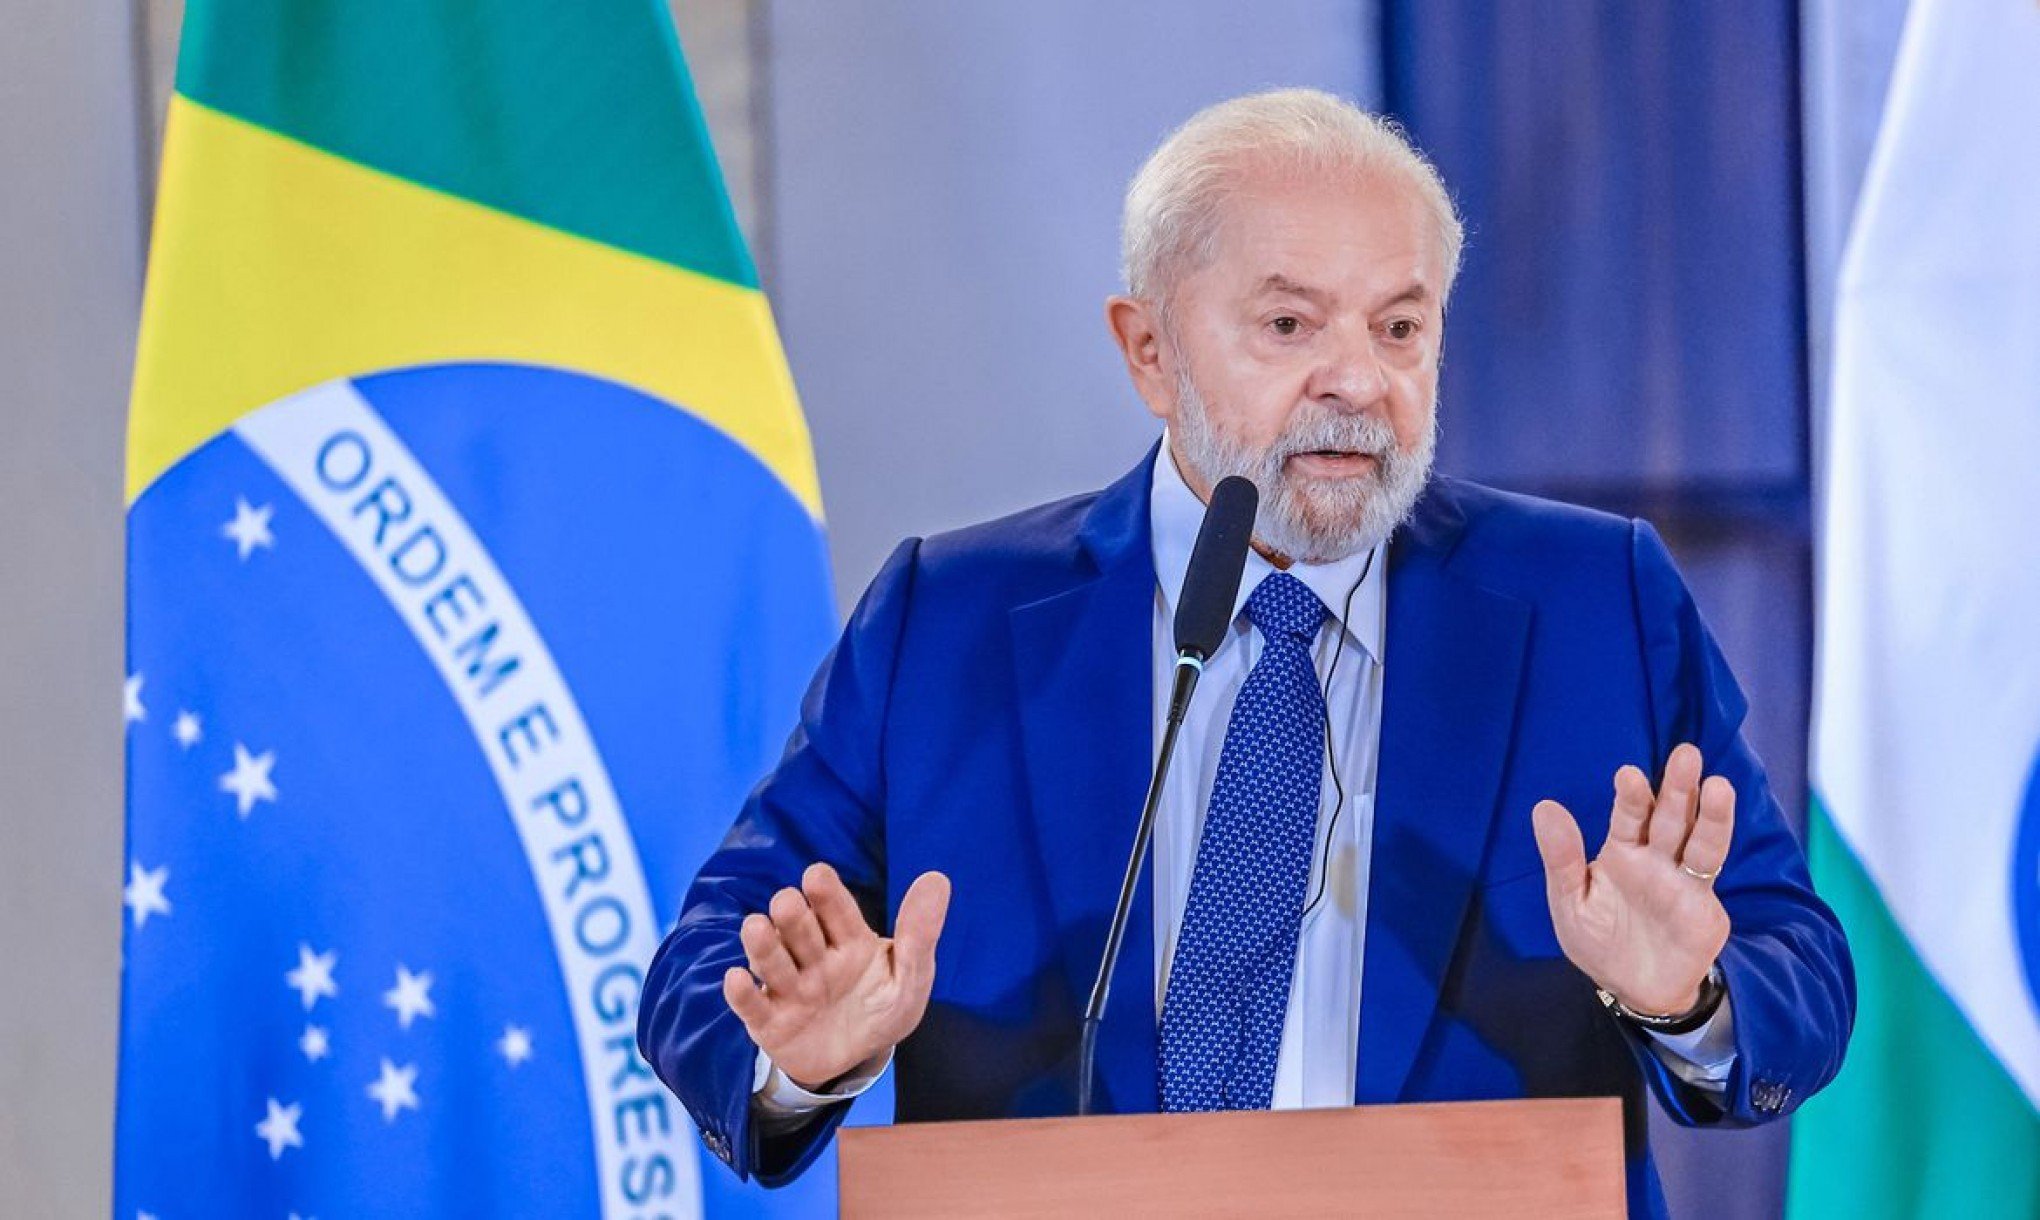 Novo anuncia apoio a pedido de impeachment de Lula e diz que um presidente não deve "ser hostil com nações amigas"